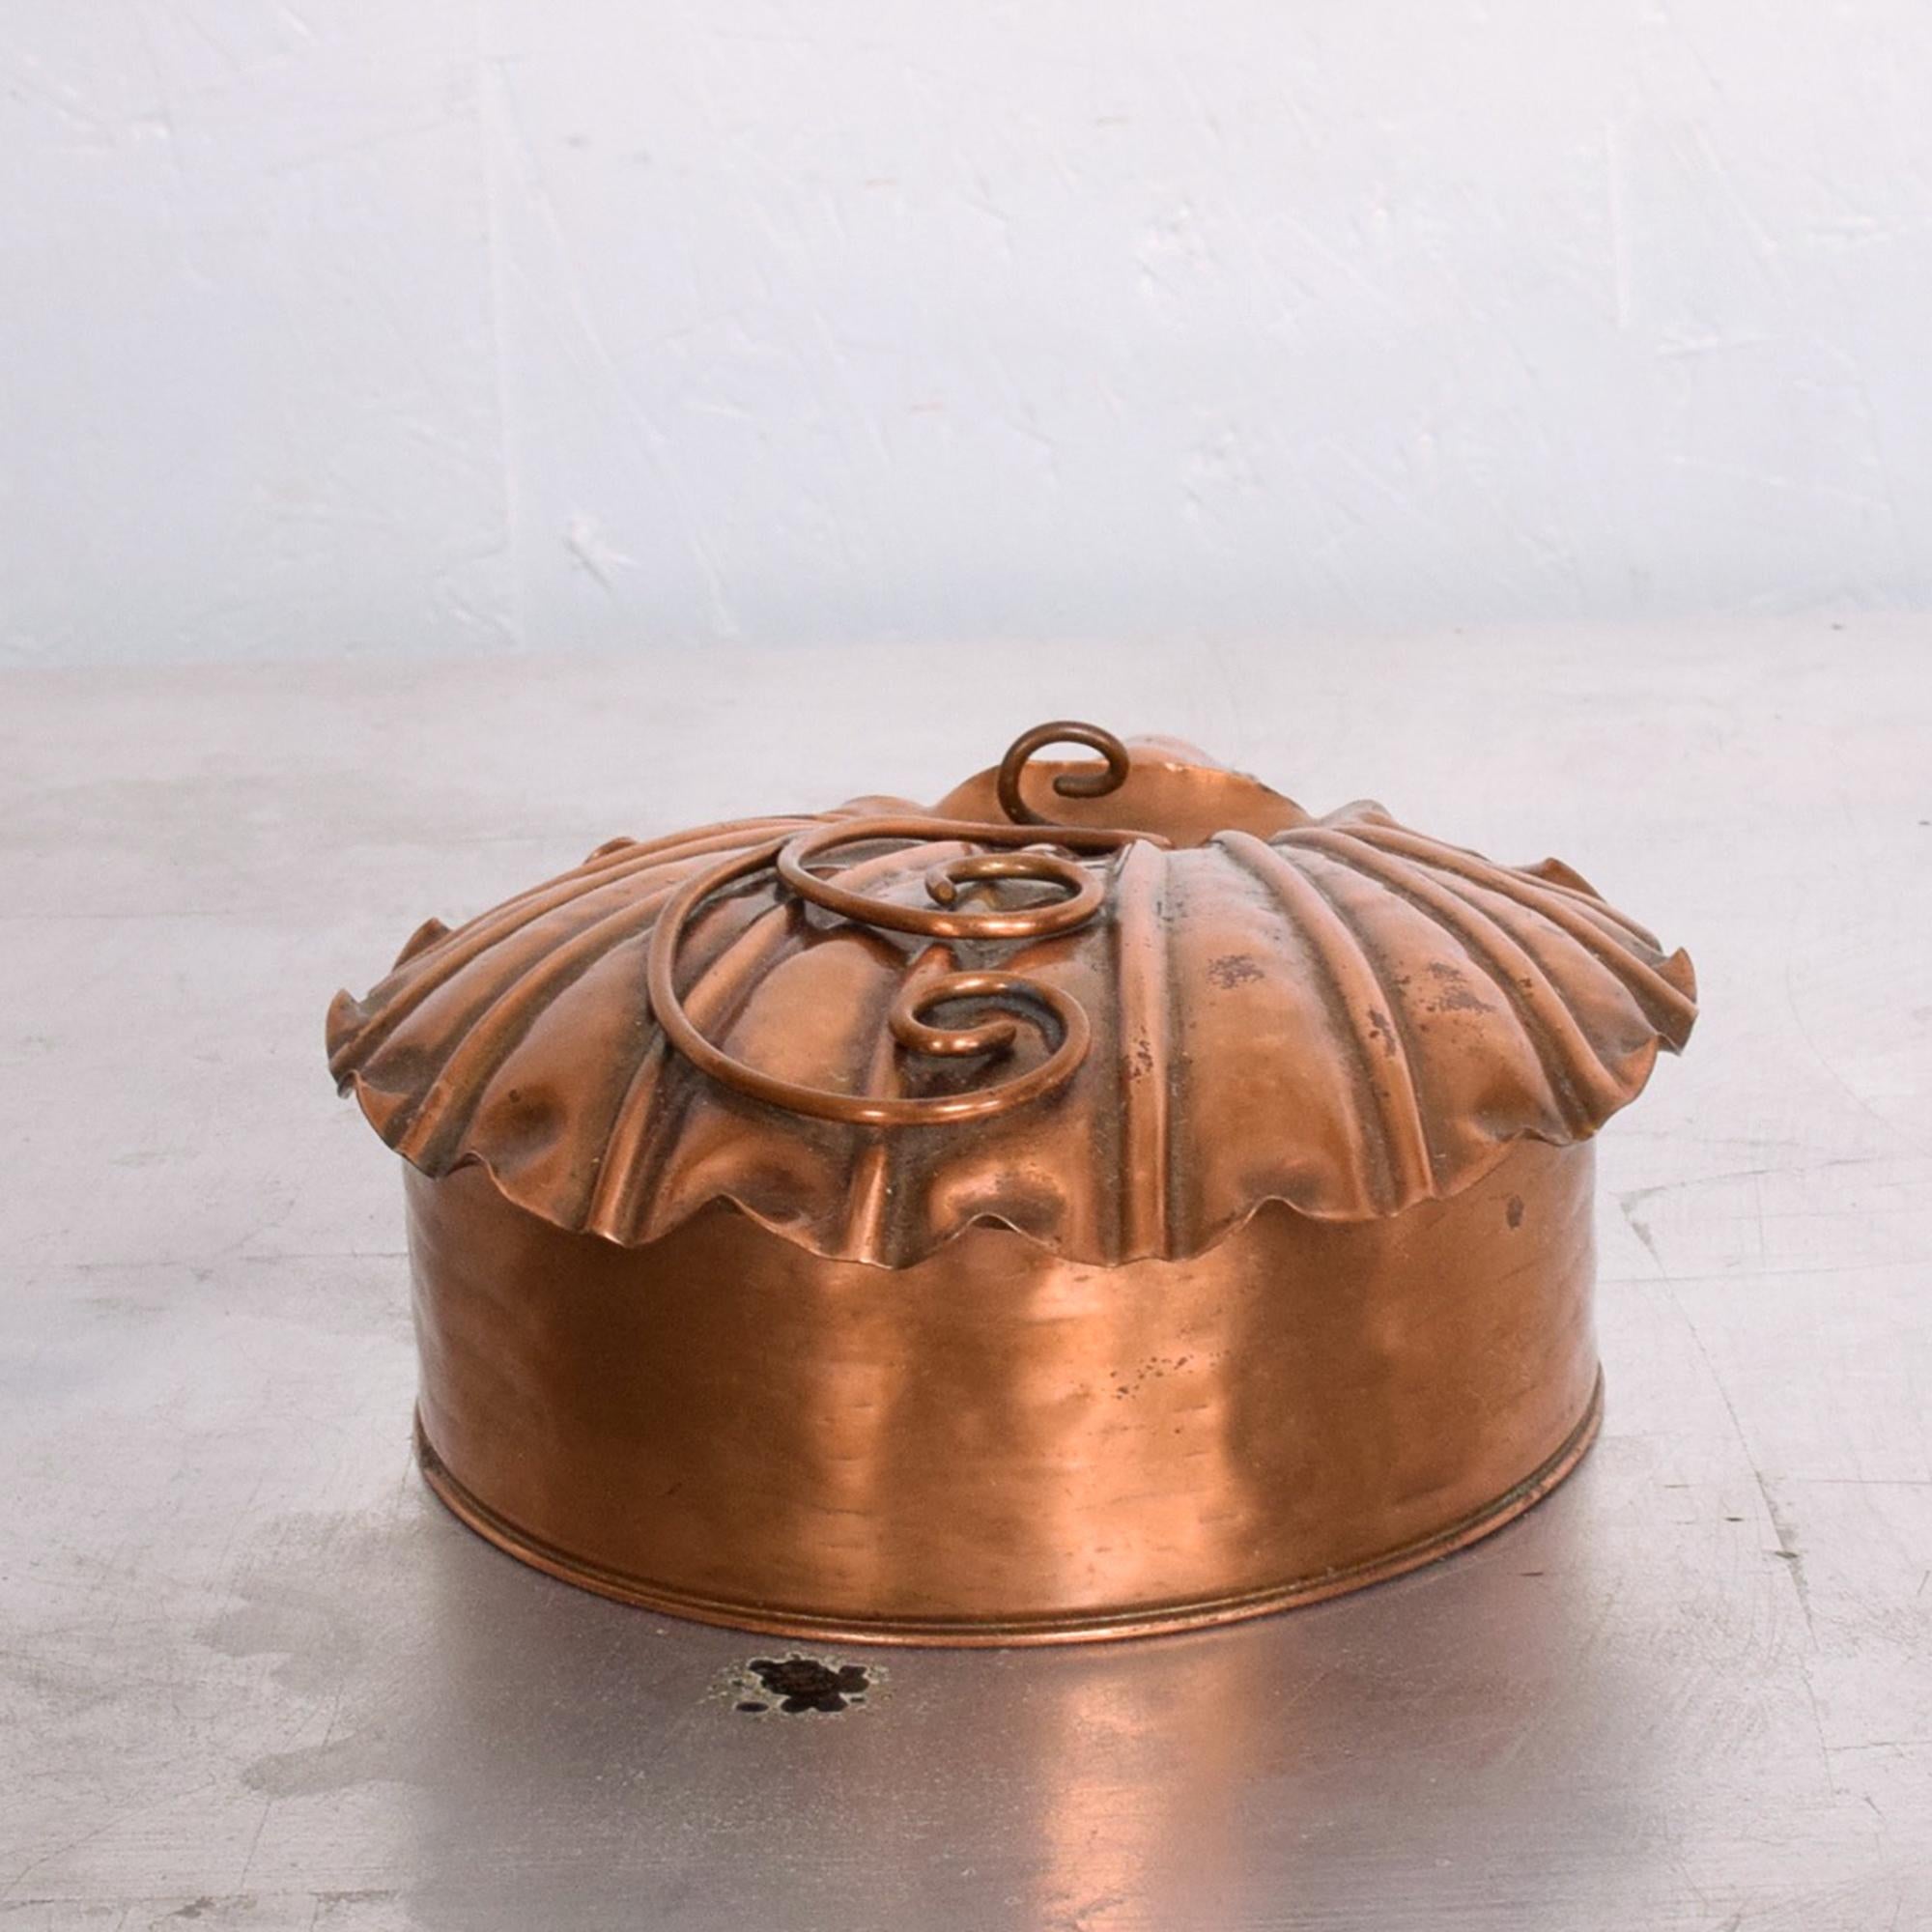 American  1960s Silent Butler Flip-Top Crumb Catcher in Gregorian Solid Copper Art Deco